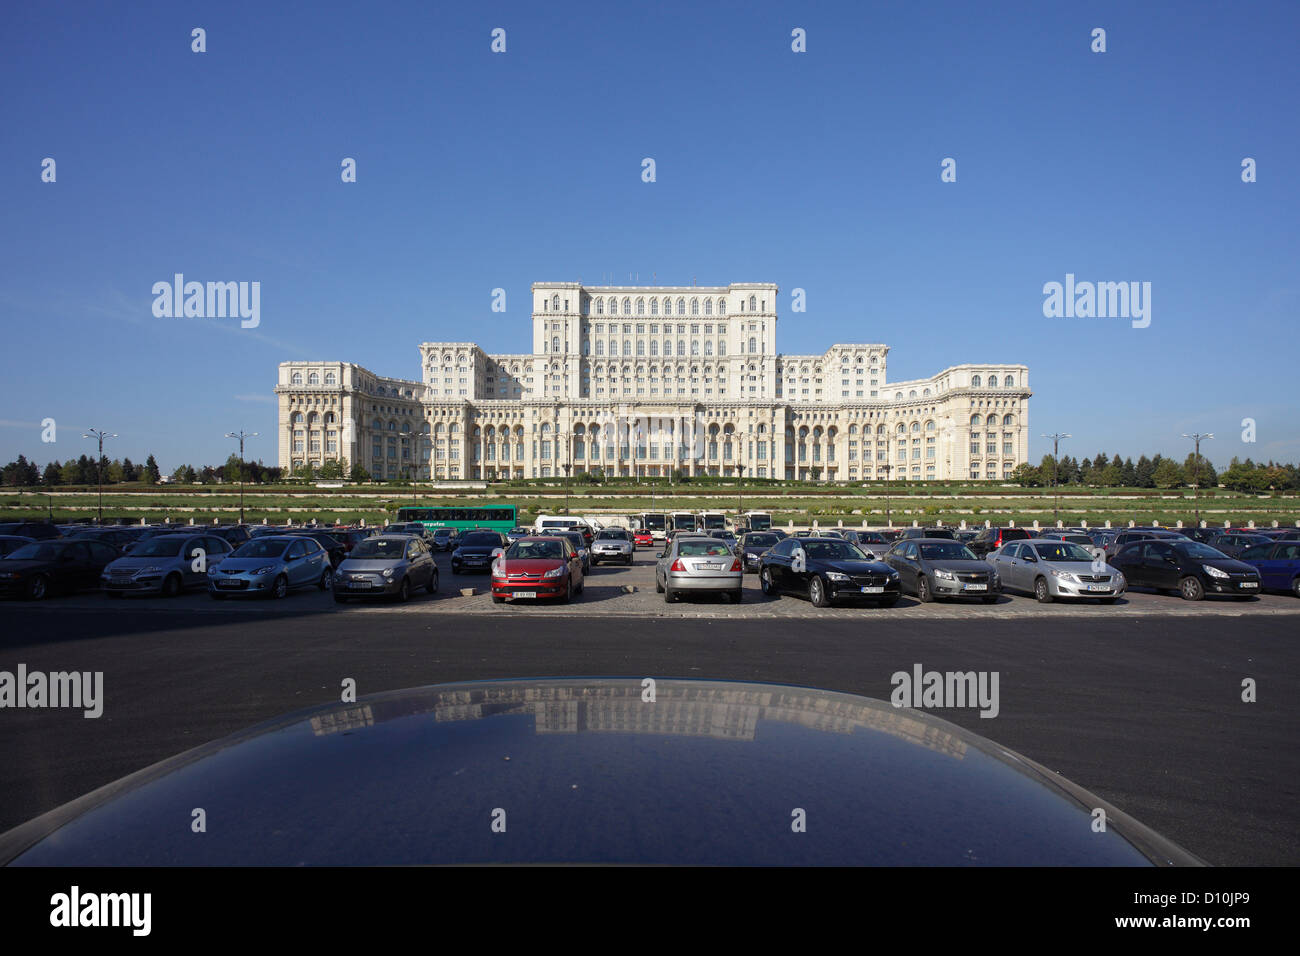 Bucharest, Romania, the Palace of the Parliament (Palatul Parlamentului) at Piata Constitutiei Stock Photo